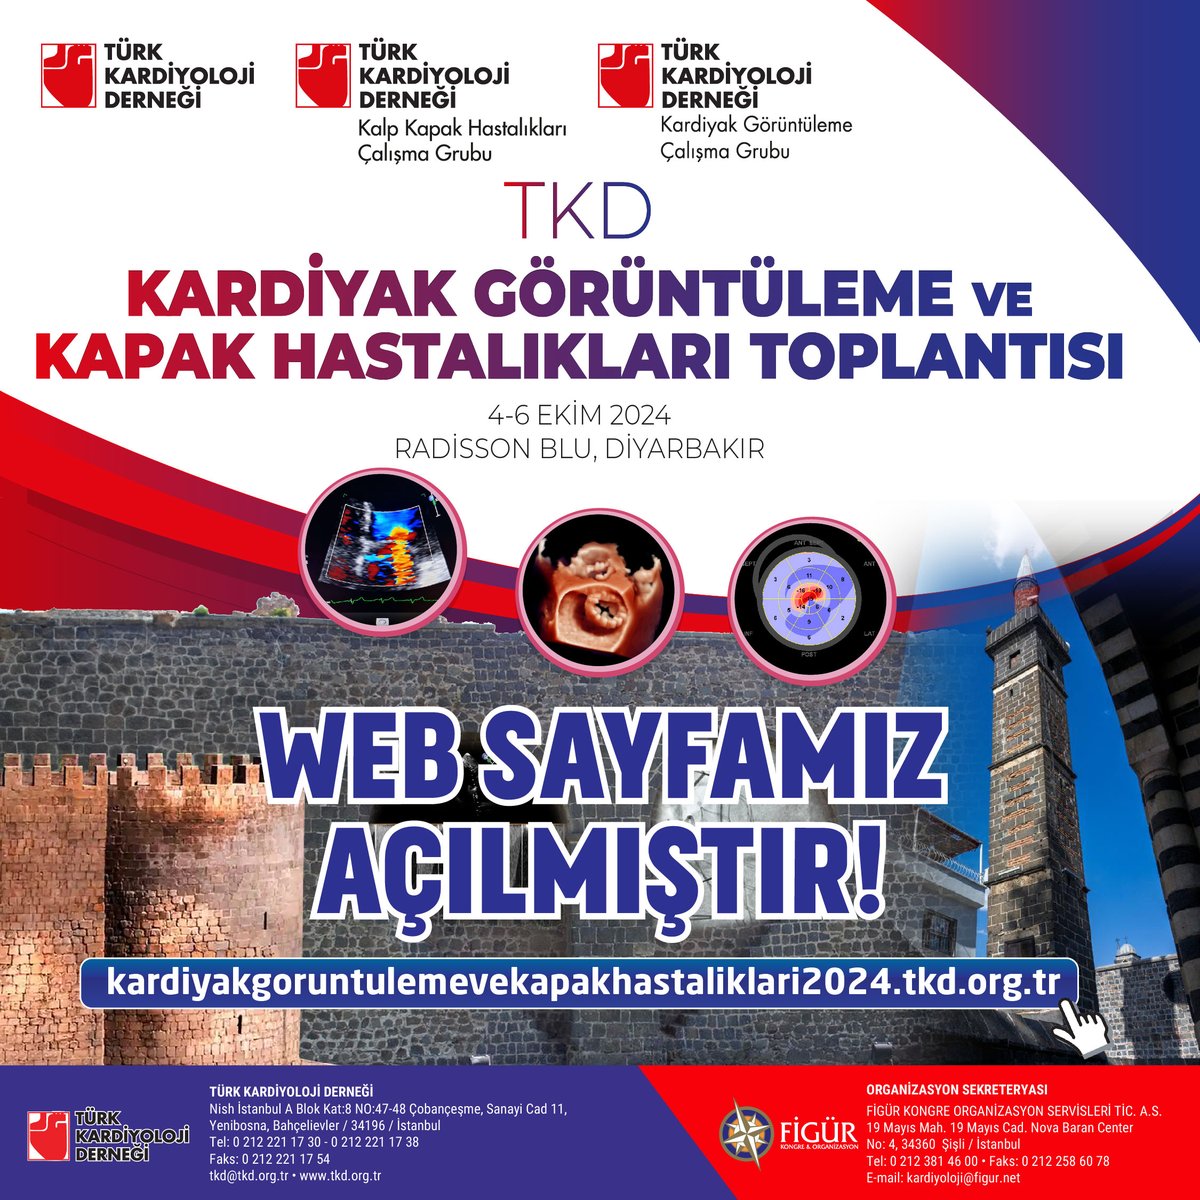 4-6 Ekim’de Diyarbakır’da gerçekleşecek olan Kardiyak Görüntüleme ve Kapak Hastalıkları Toplantısı’nın web sayfası yayına açıldı! Web sitemizi ziyaret etmeyi unutmayın. …emevekapakhastaliklari2024.tkd.org.tr